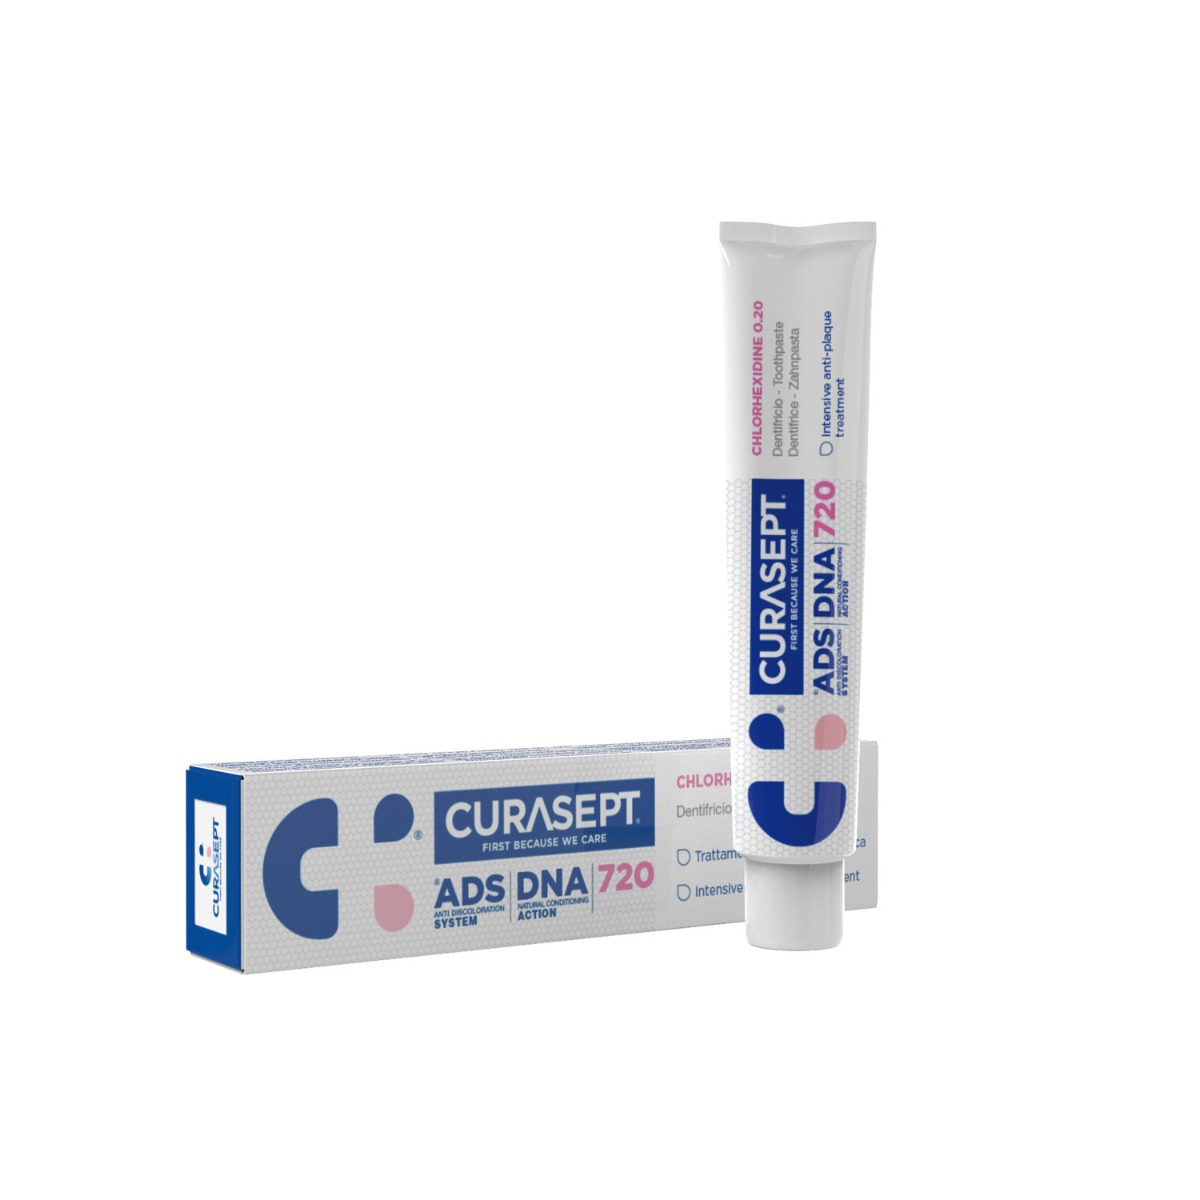 CURASEPT ADS DNA 720 gelová zubní pasta 75 ml CURASEPT